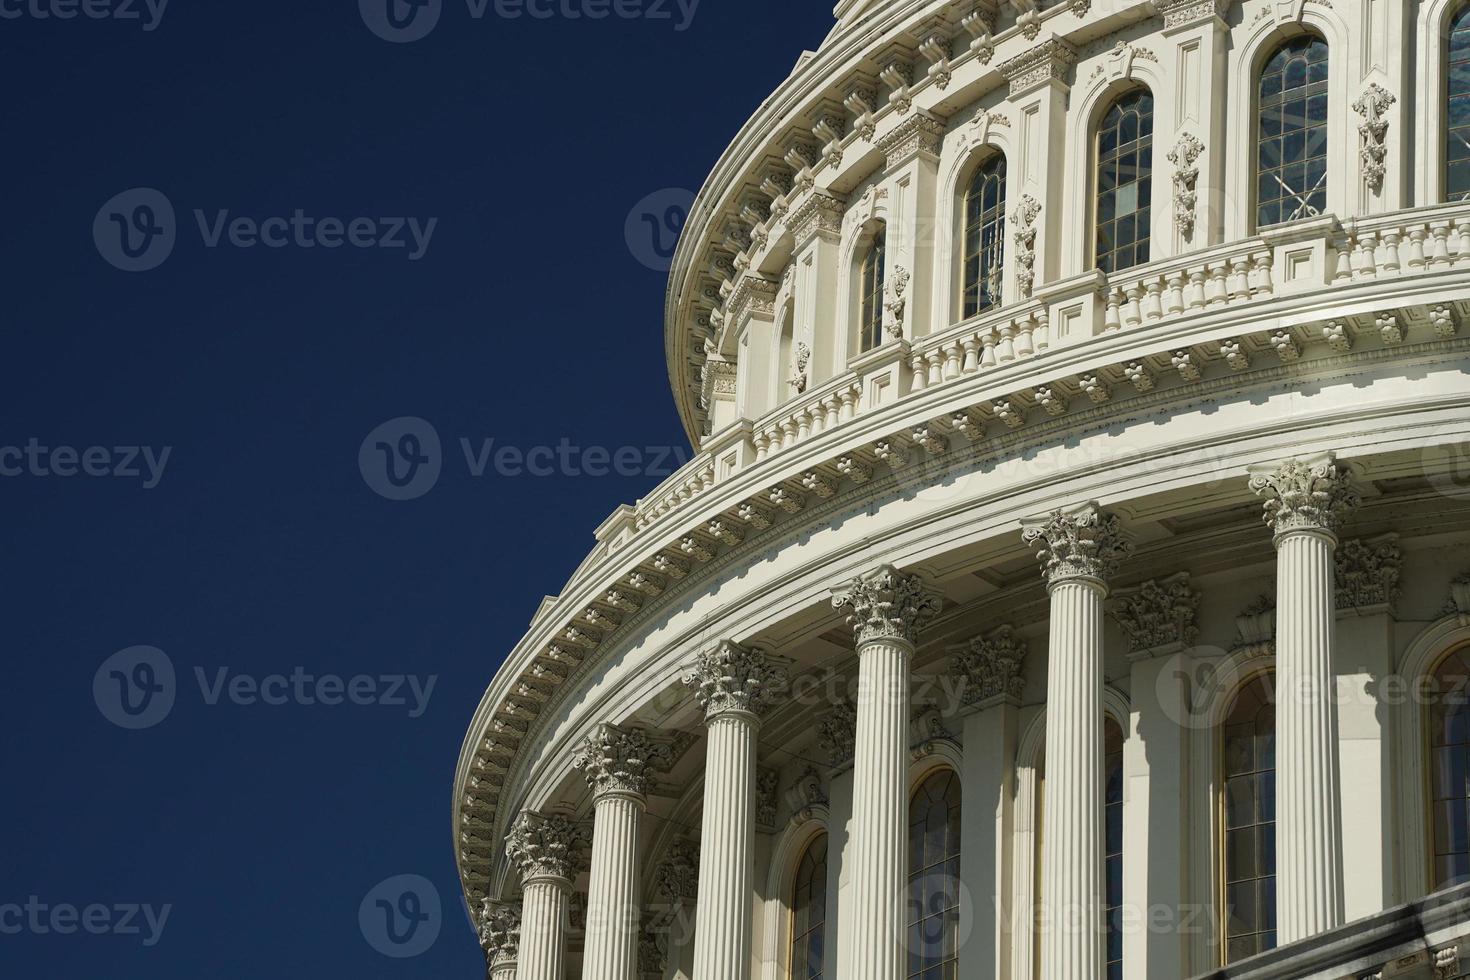 Washington corriente continua Capitolio detalle en el profundo azul cielo antecedentes foto